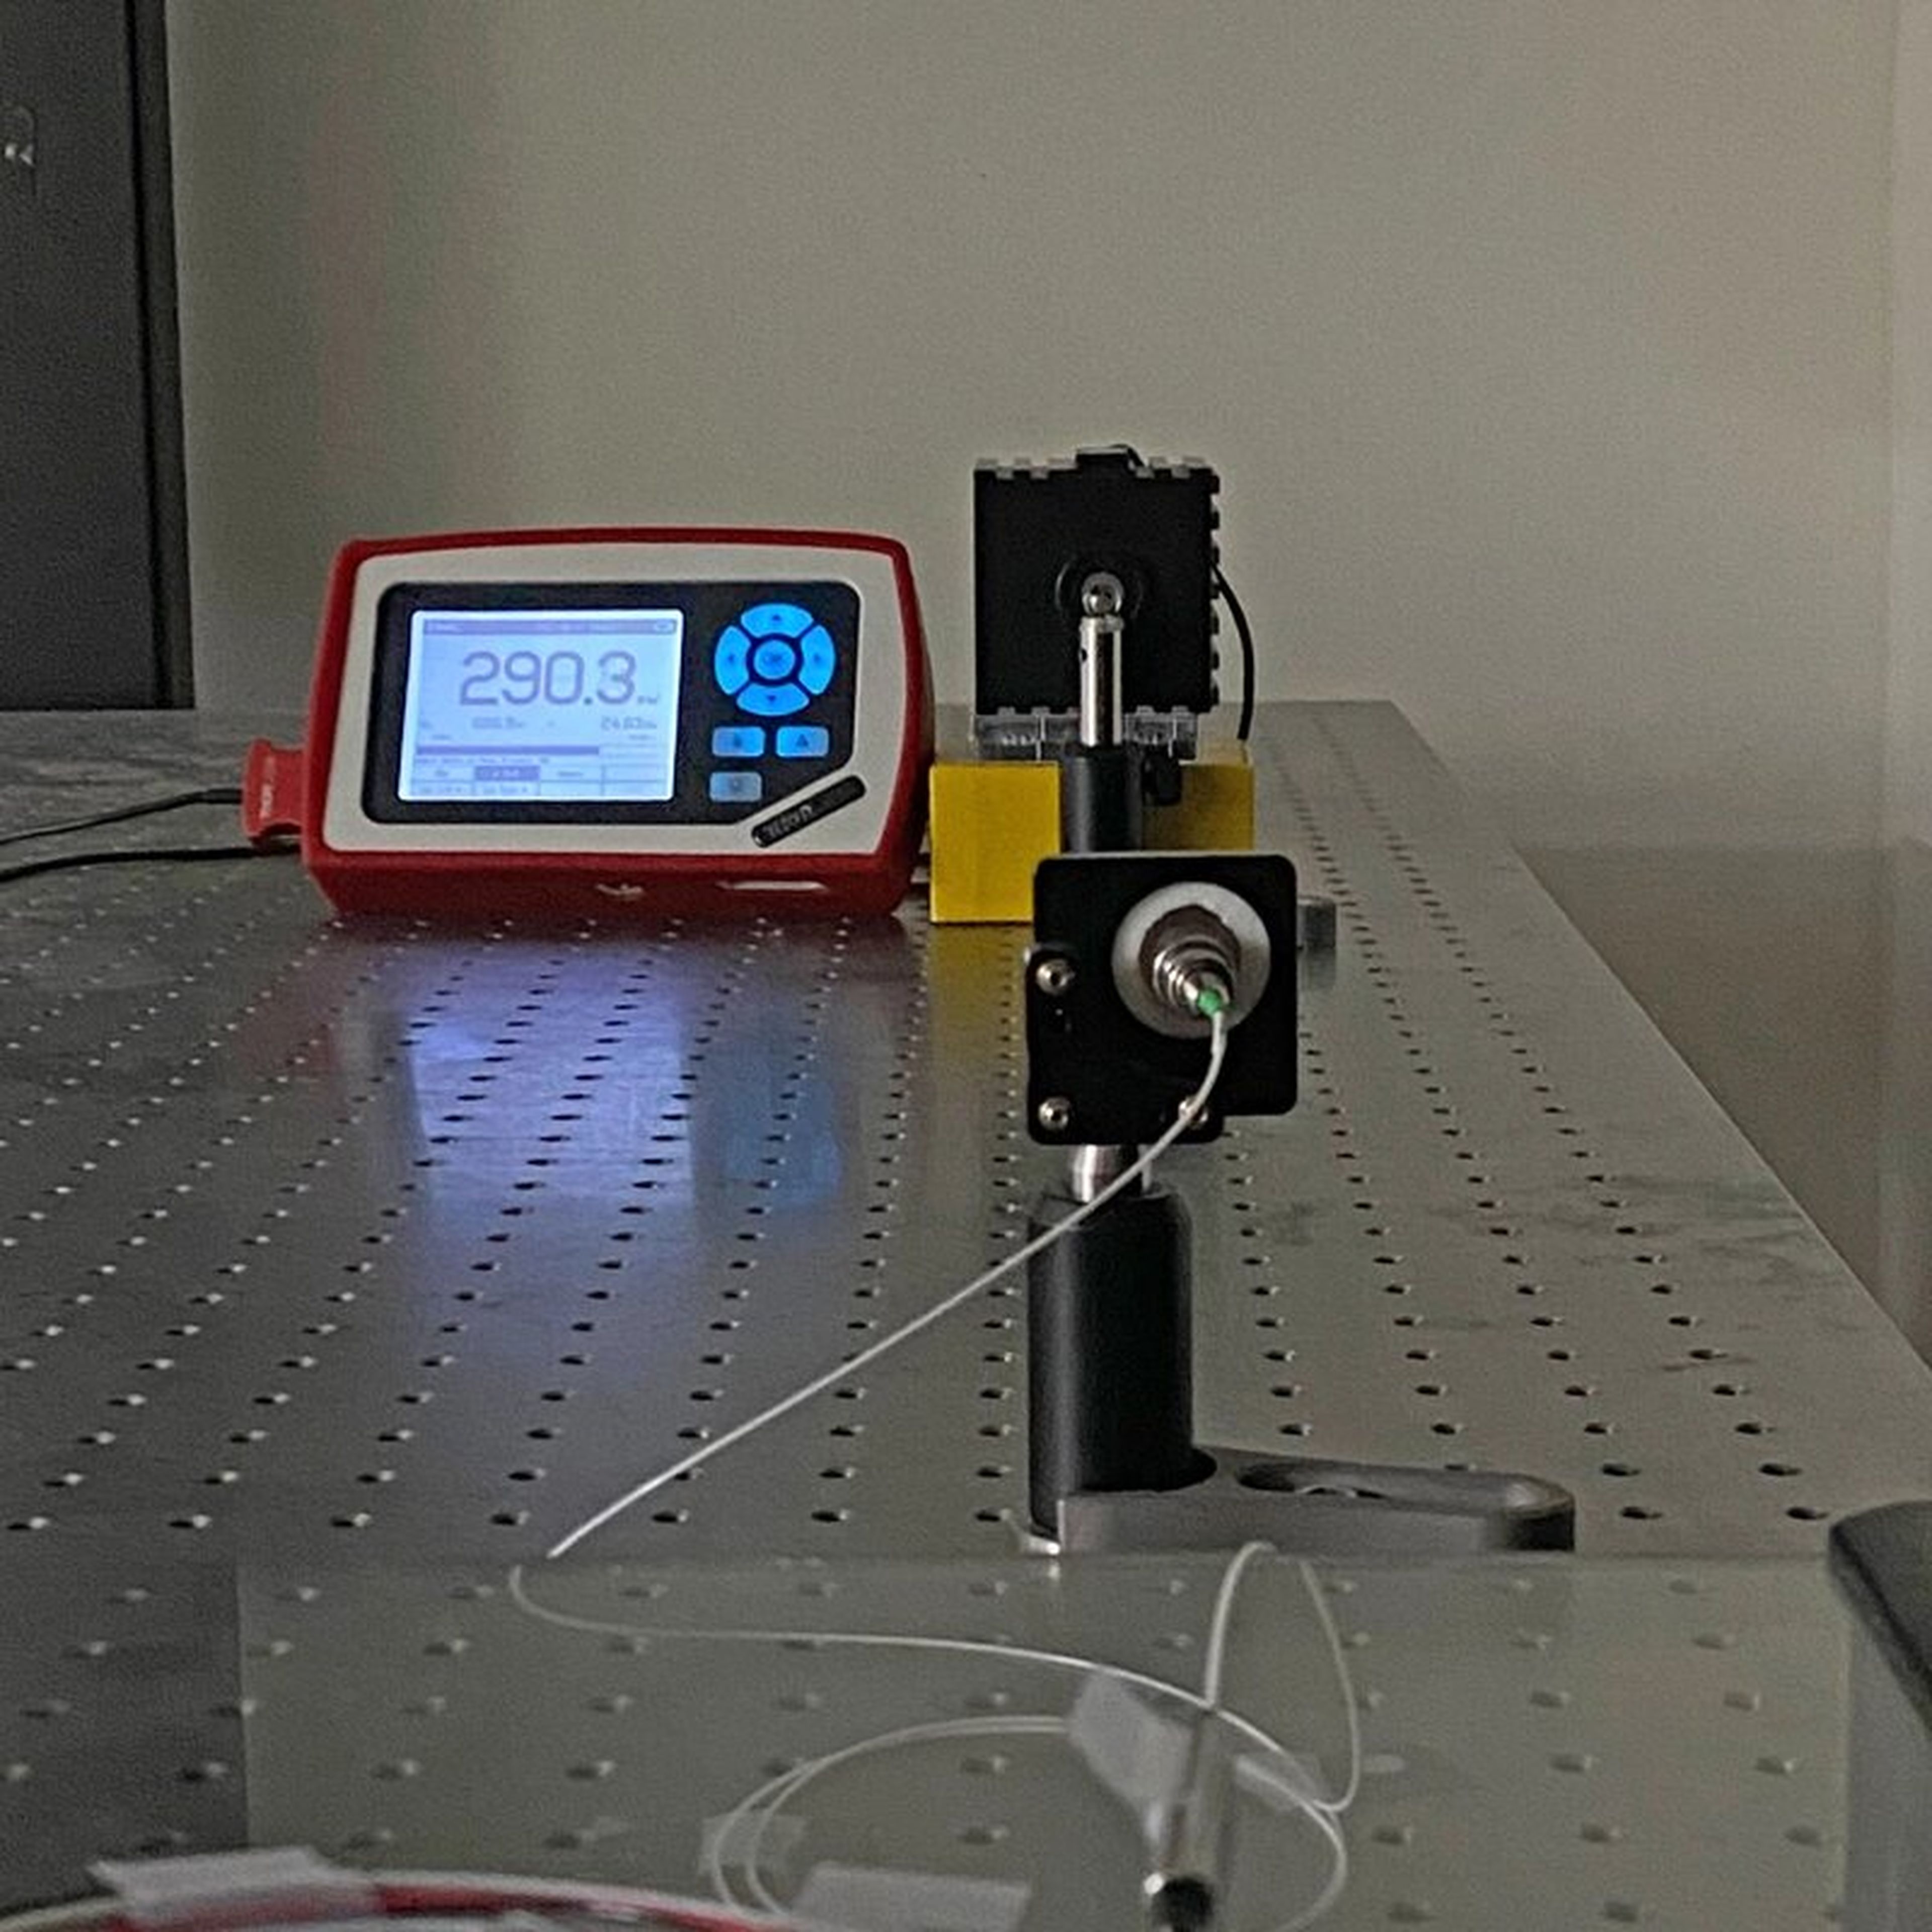 Transmisor y receptor láser sobre una mesa durante el experimento.